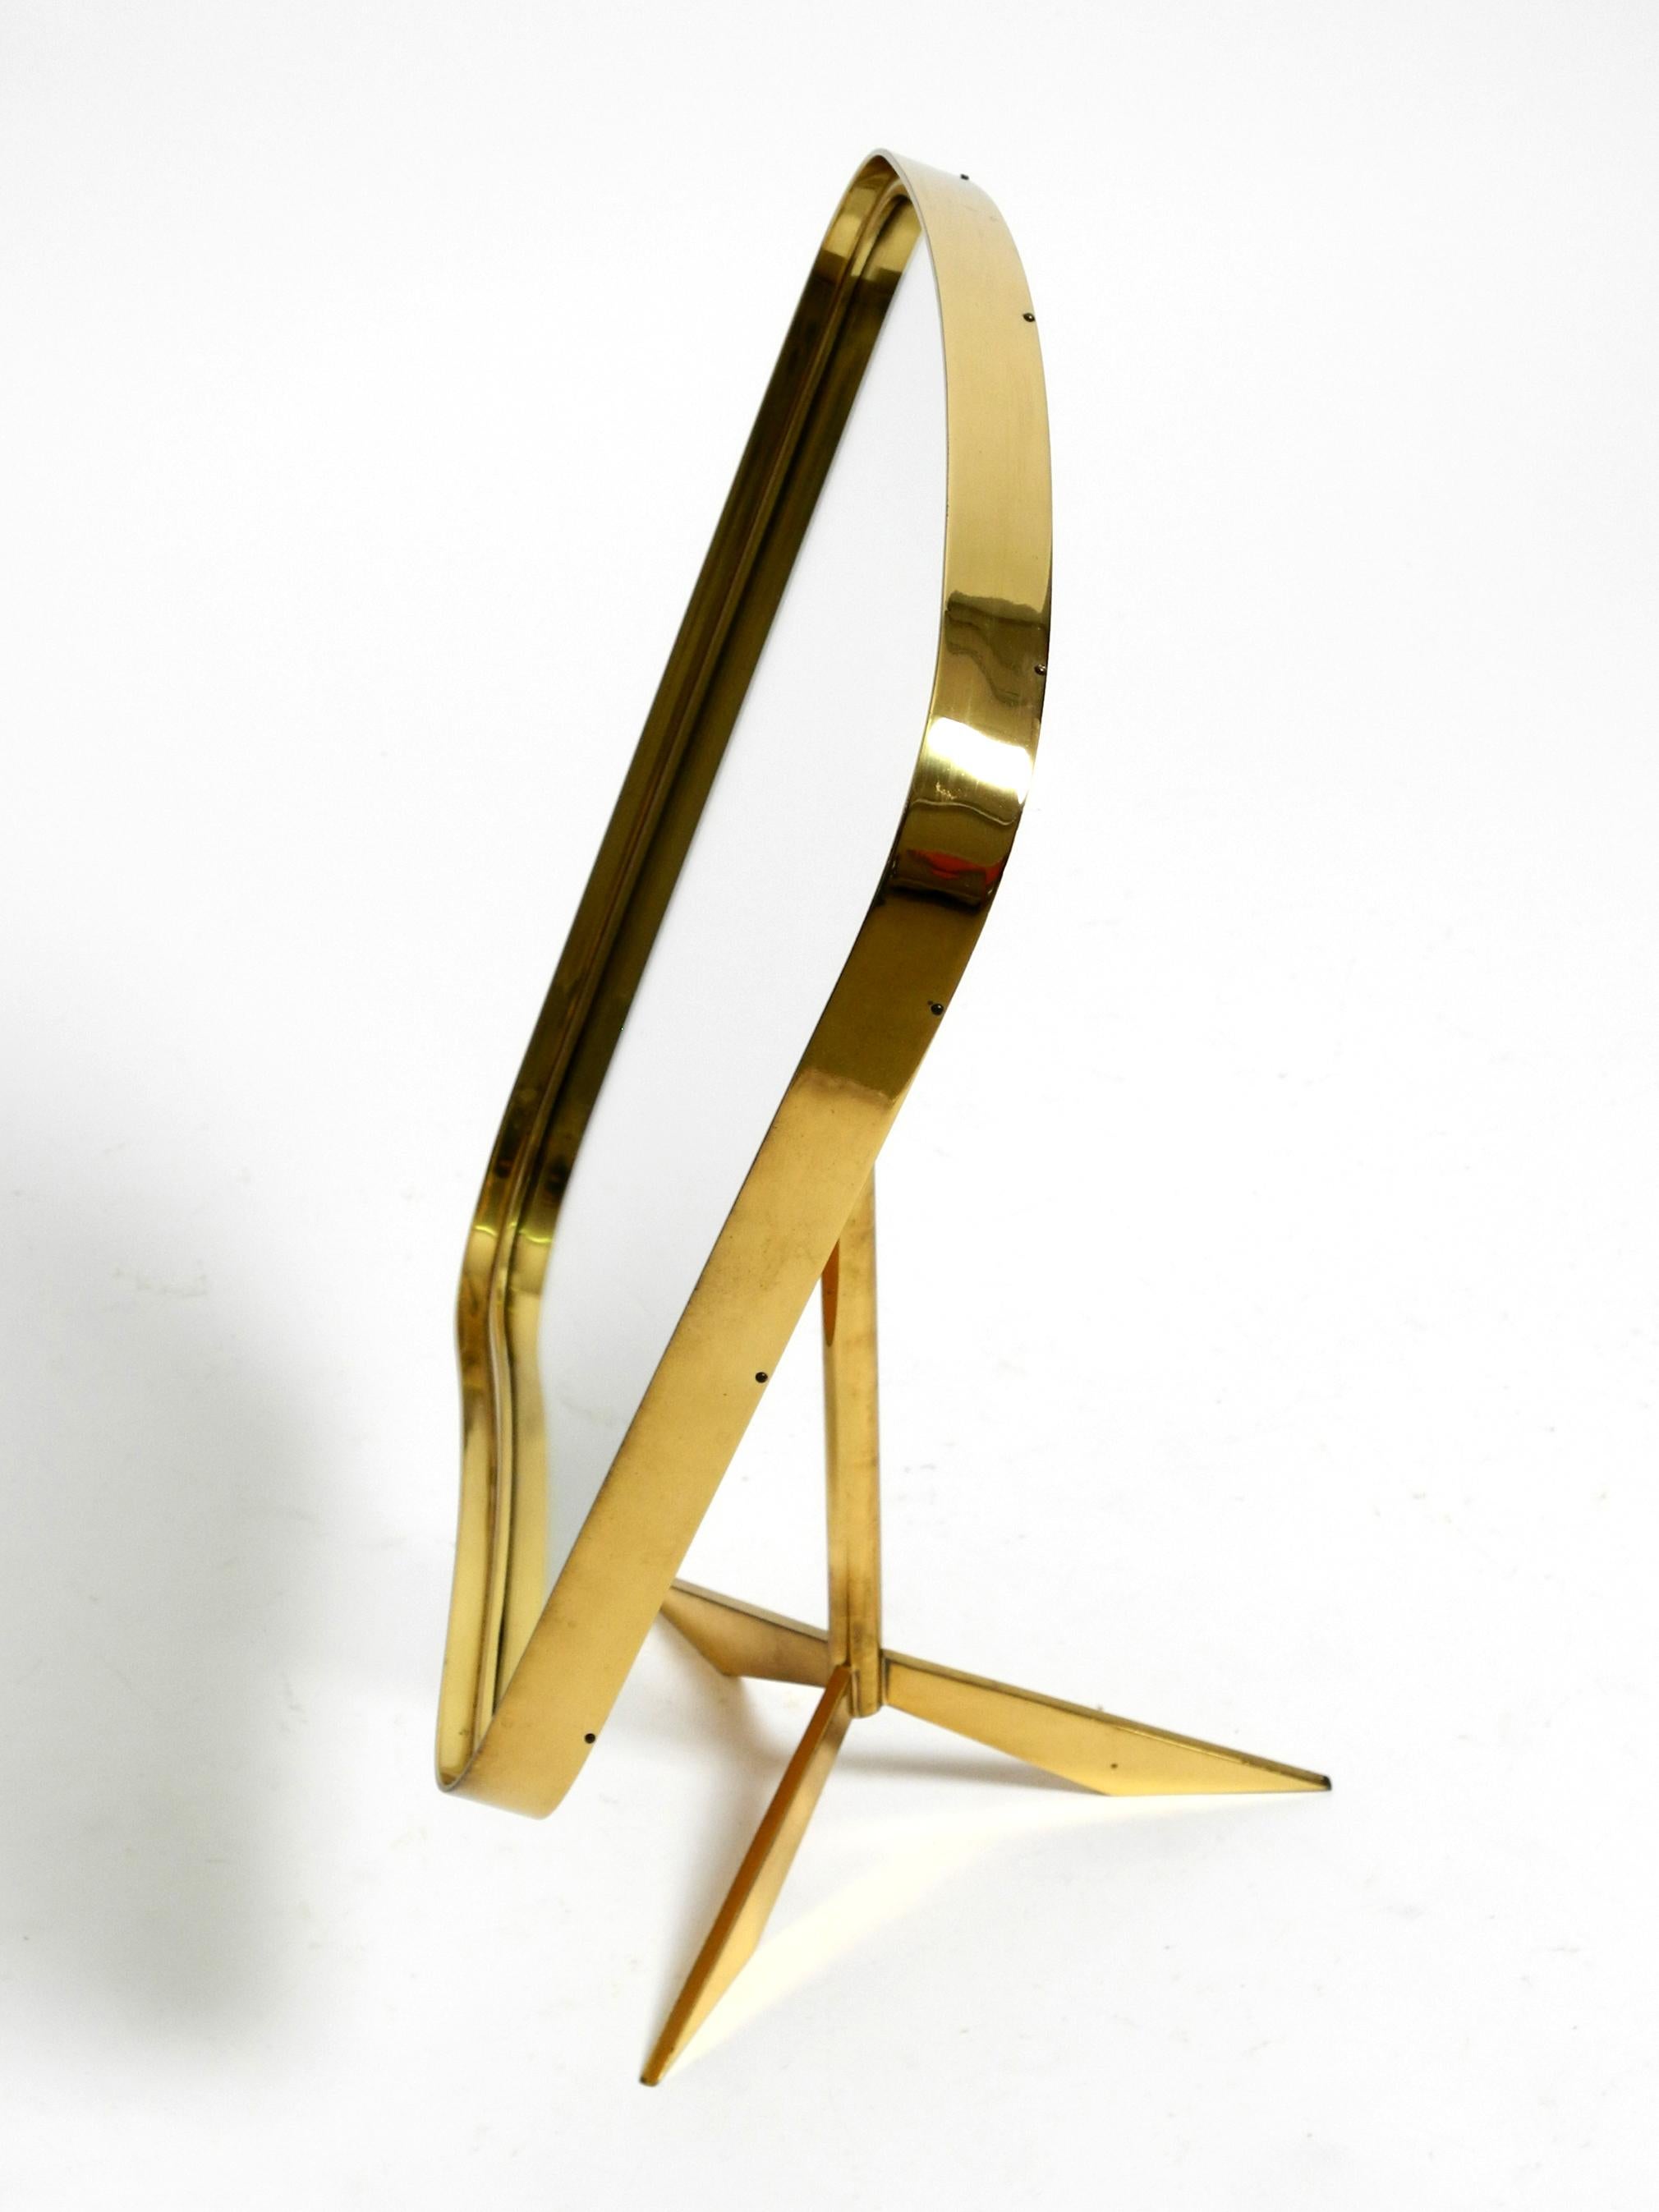 Large adjustable Mid Century brass tripod table mirror by Vereinigte Werkstätten For Sale 9